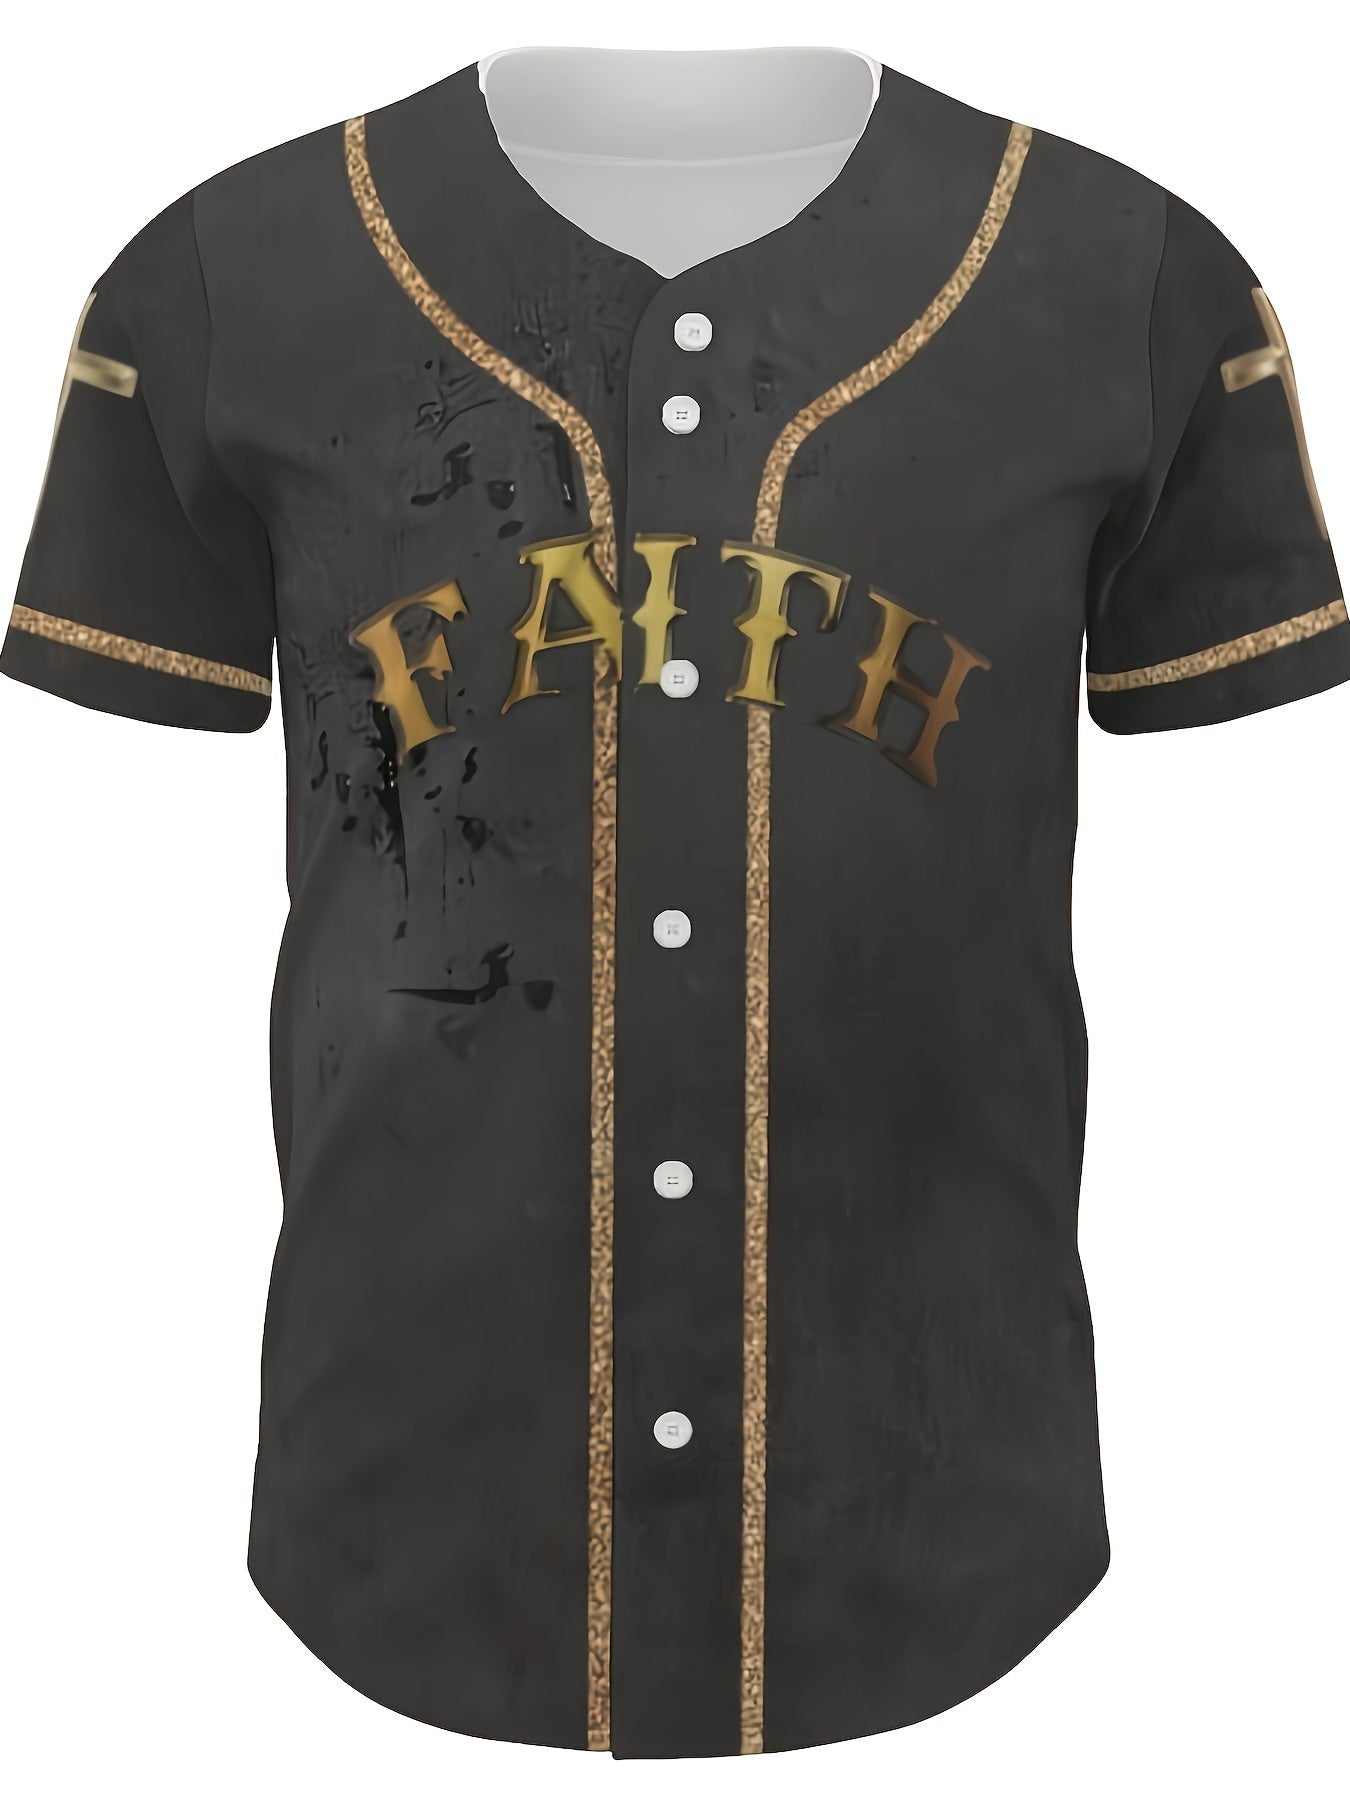 FAITH Men's Christian Baseball Jersey claimedbygoddesigns